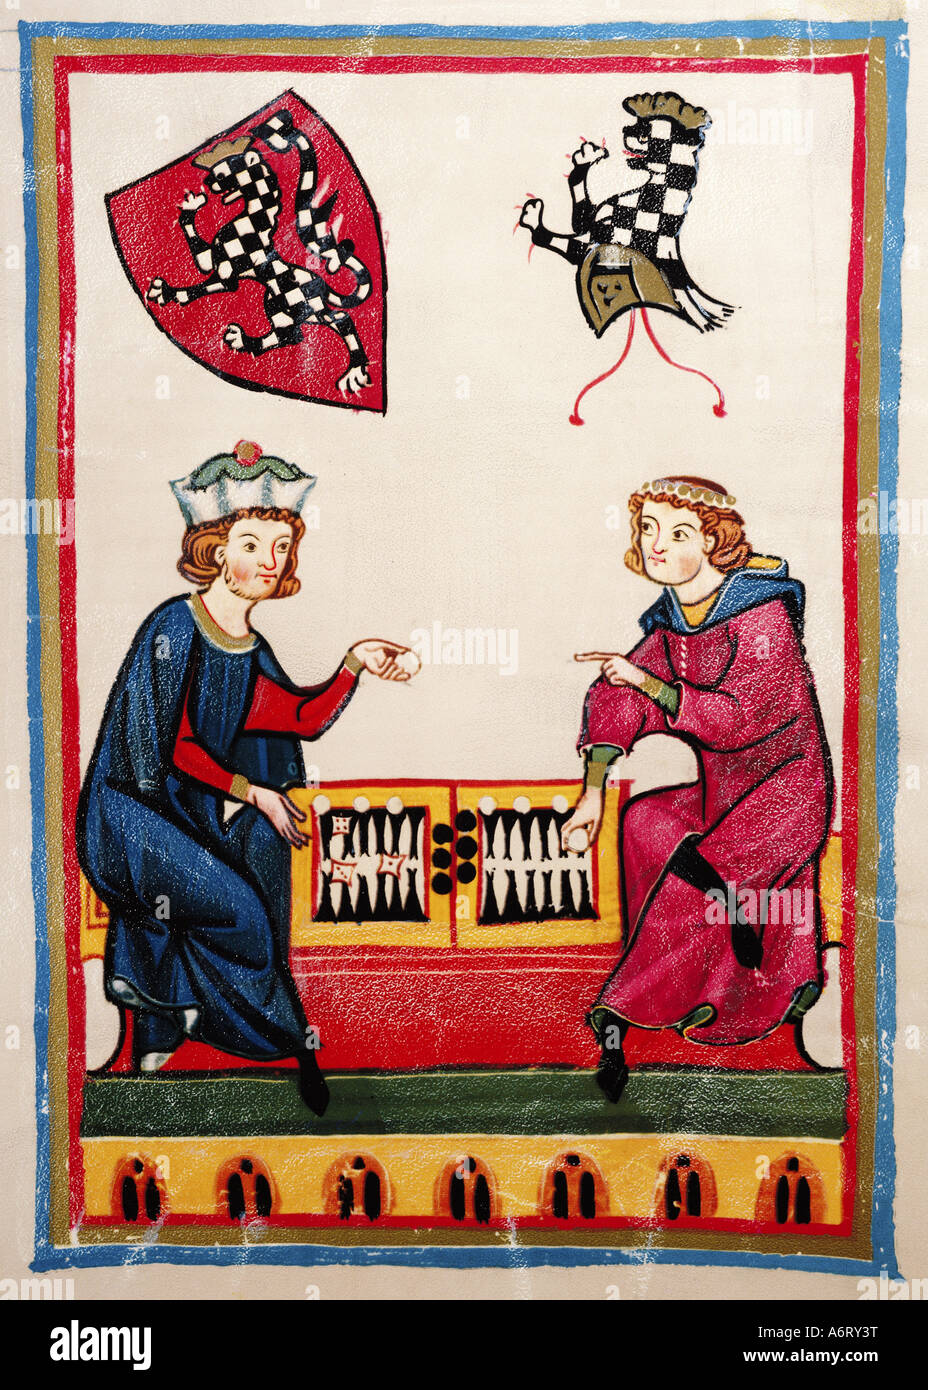 Bildende Kunst, Mittelalter, Gothic, Beleuchtung, Codex Manesse, Zürich, 1305-1340, Meister Goeli, Verkleidung Farbe auf Pergament, Arbeitsvermittler Stockfoto